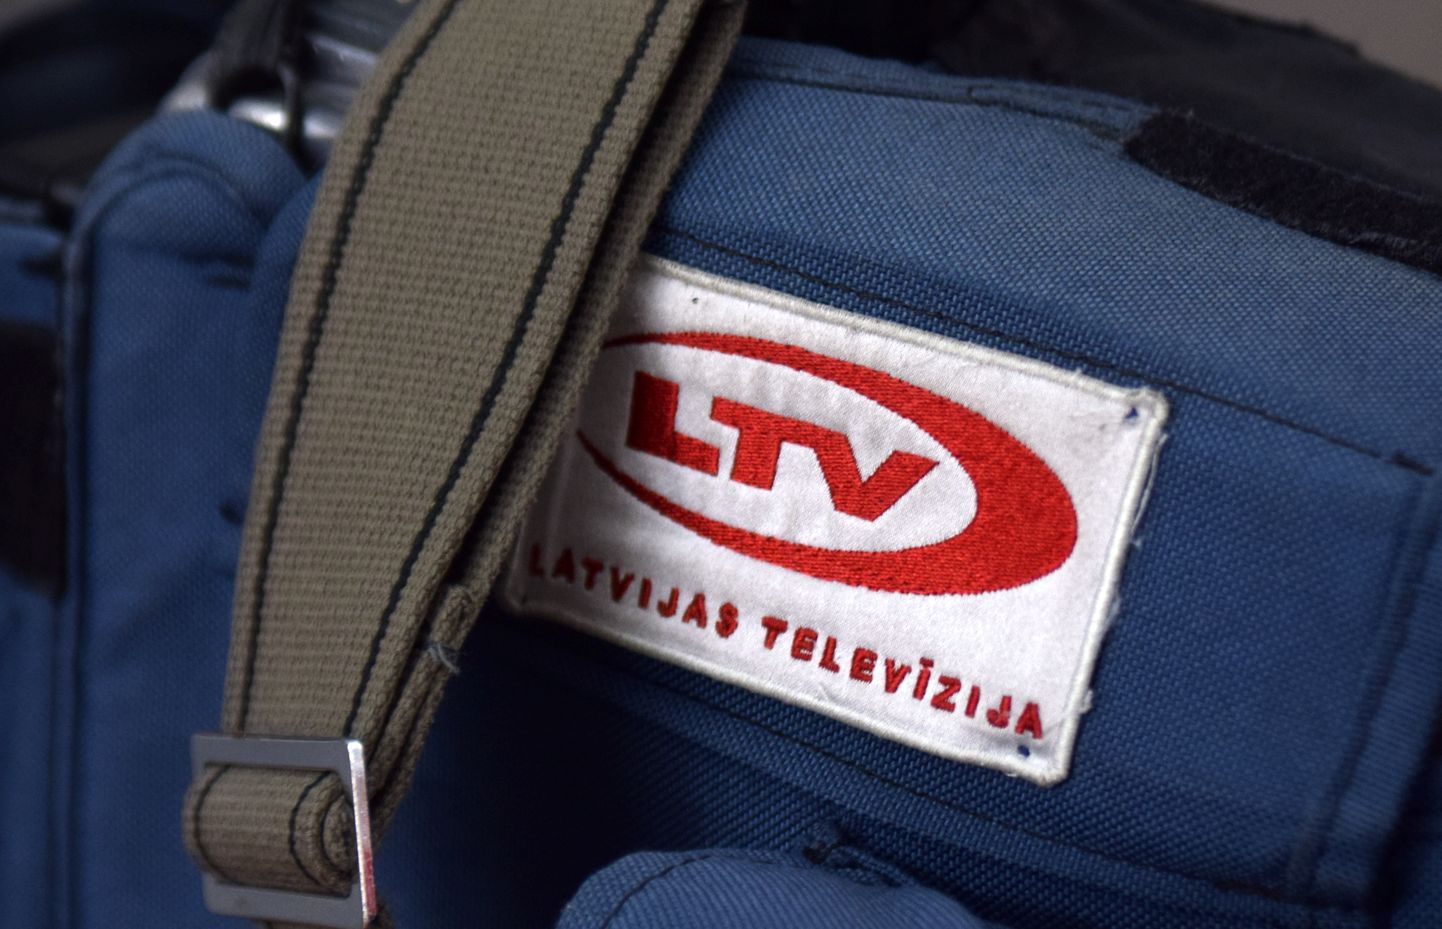 Latvijas Televīzijas darbinieka soma.